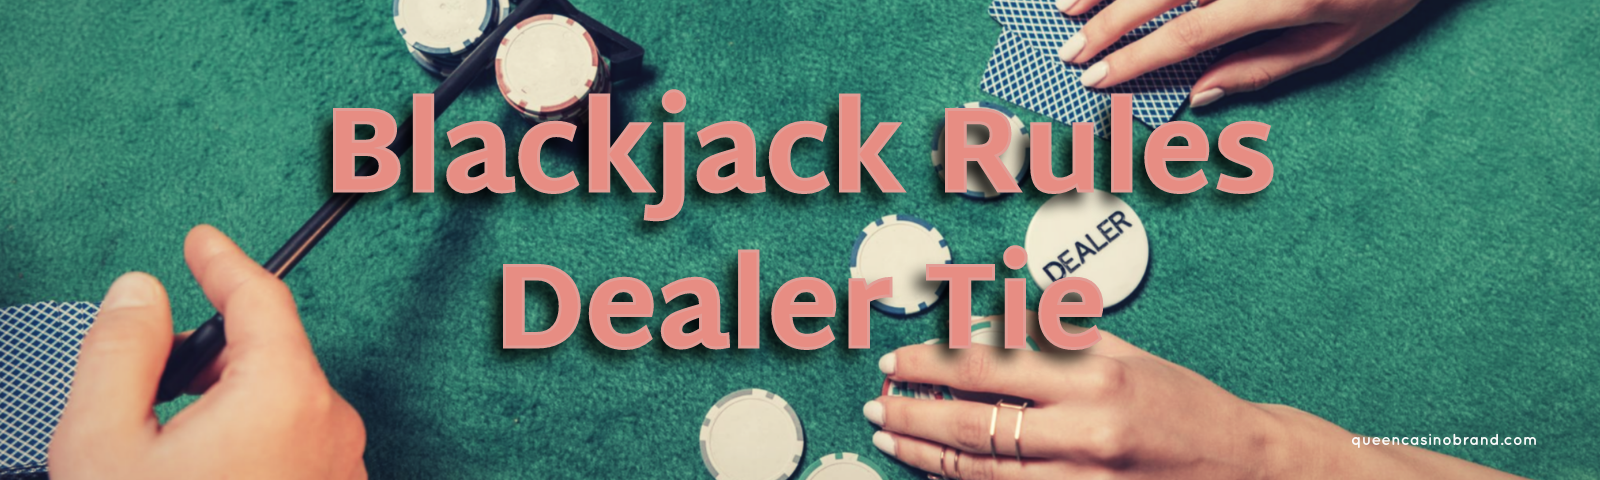 Blackjack Rules Dealer Tie | Queen Casino Brand